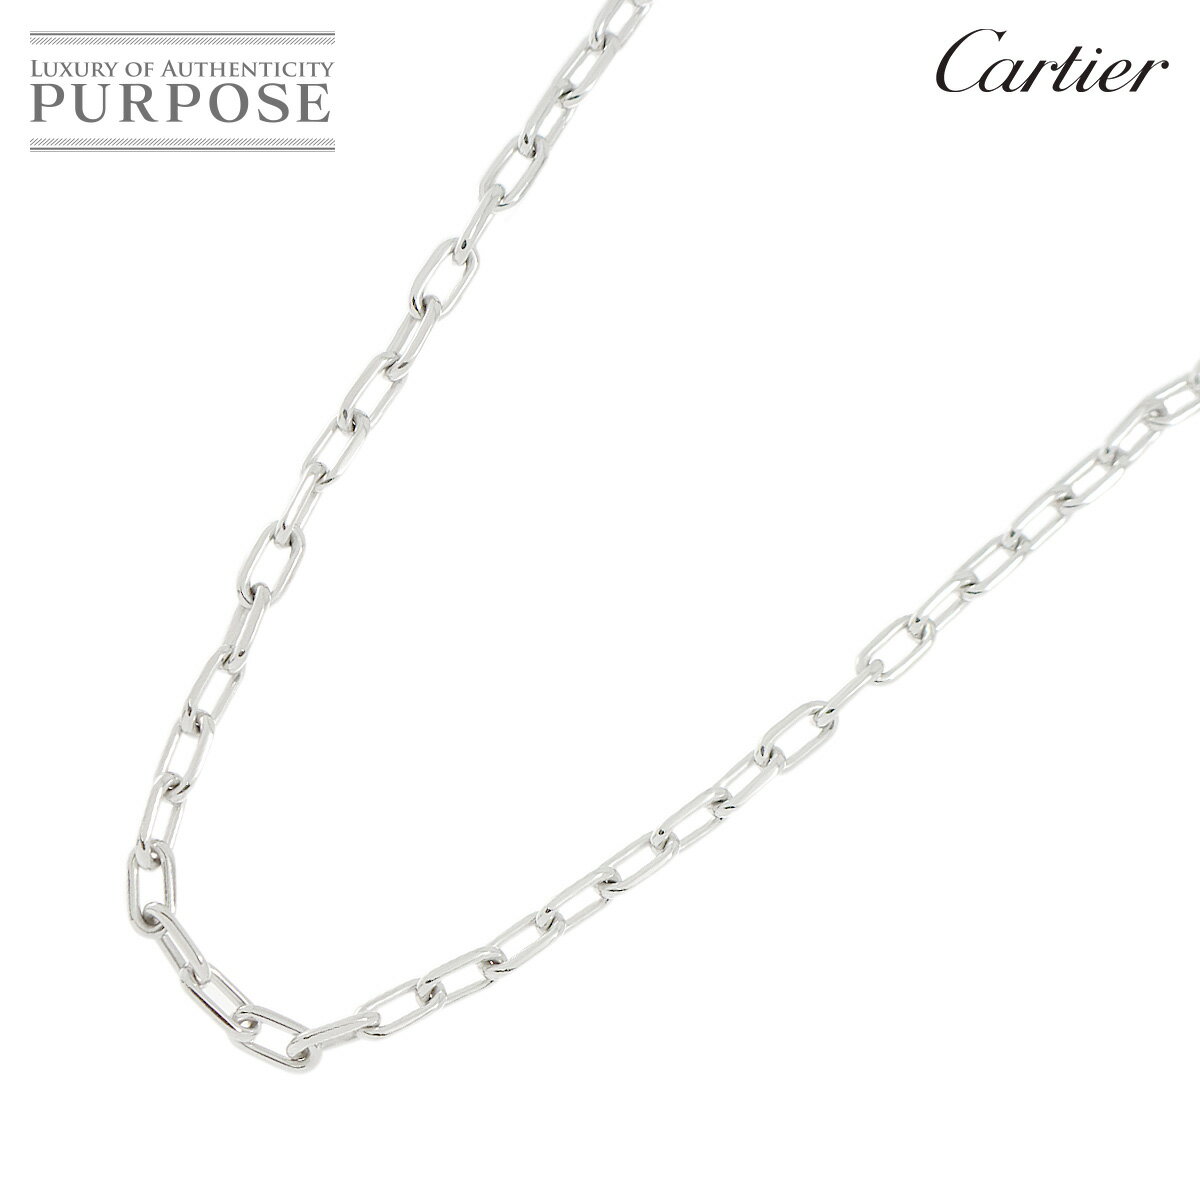 【新品同様】 カルティエ Cartier スパルタカス ネックレス 46cm K18 WG ホワイトゴールド 750 Necklace【中古】